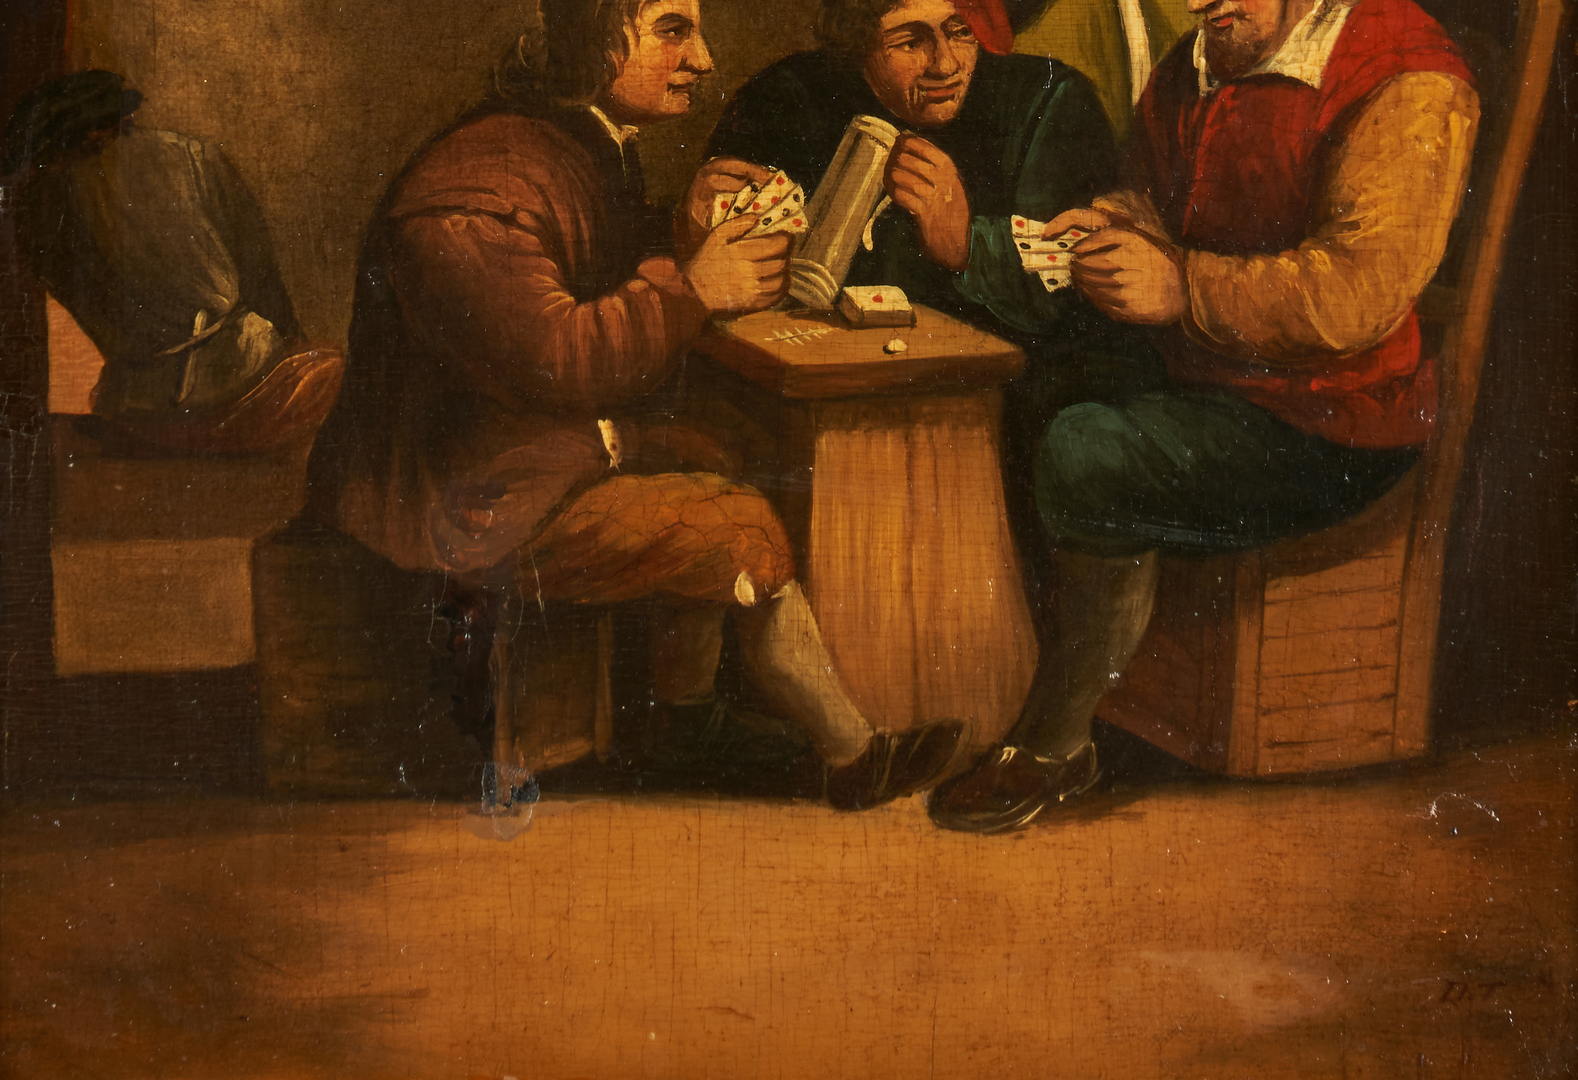 Lot 308: Pr. O/B Tavern Scenes, Manner of David Teniers II